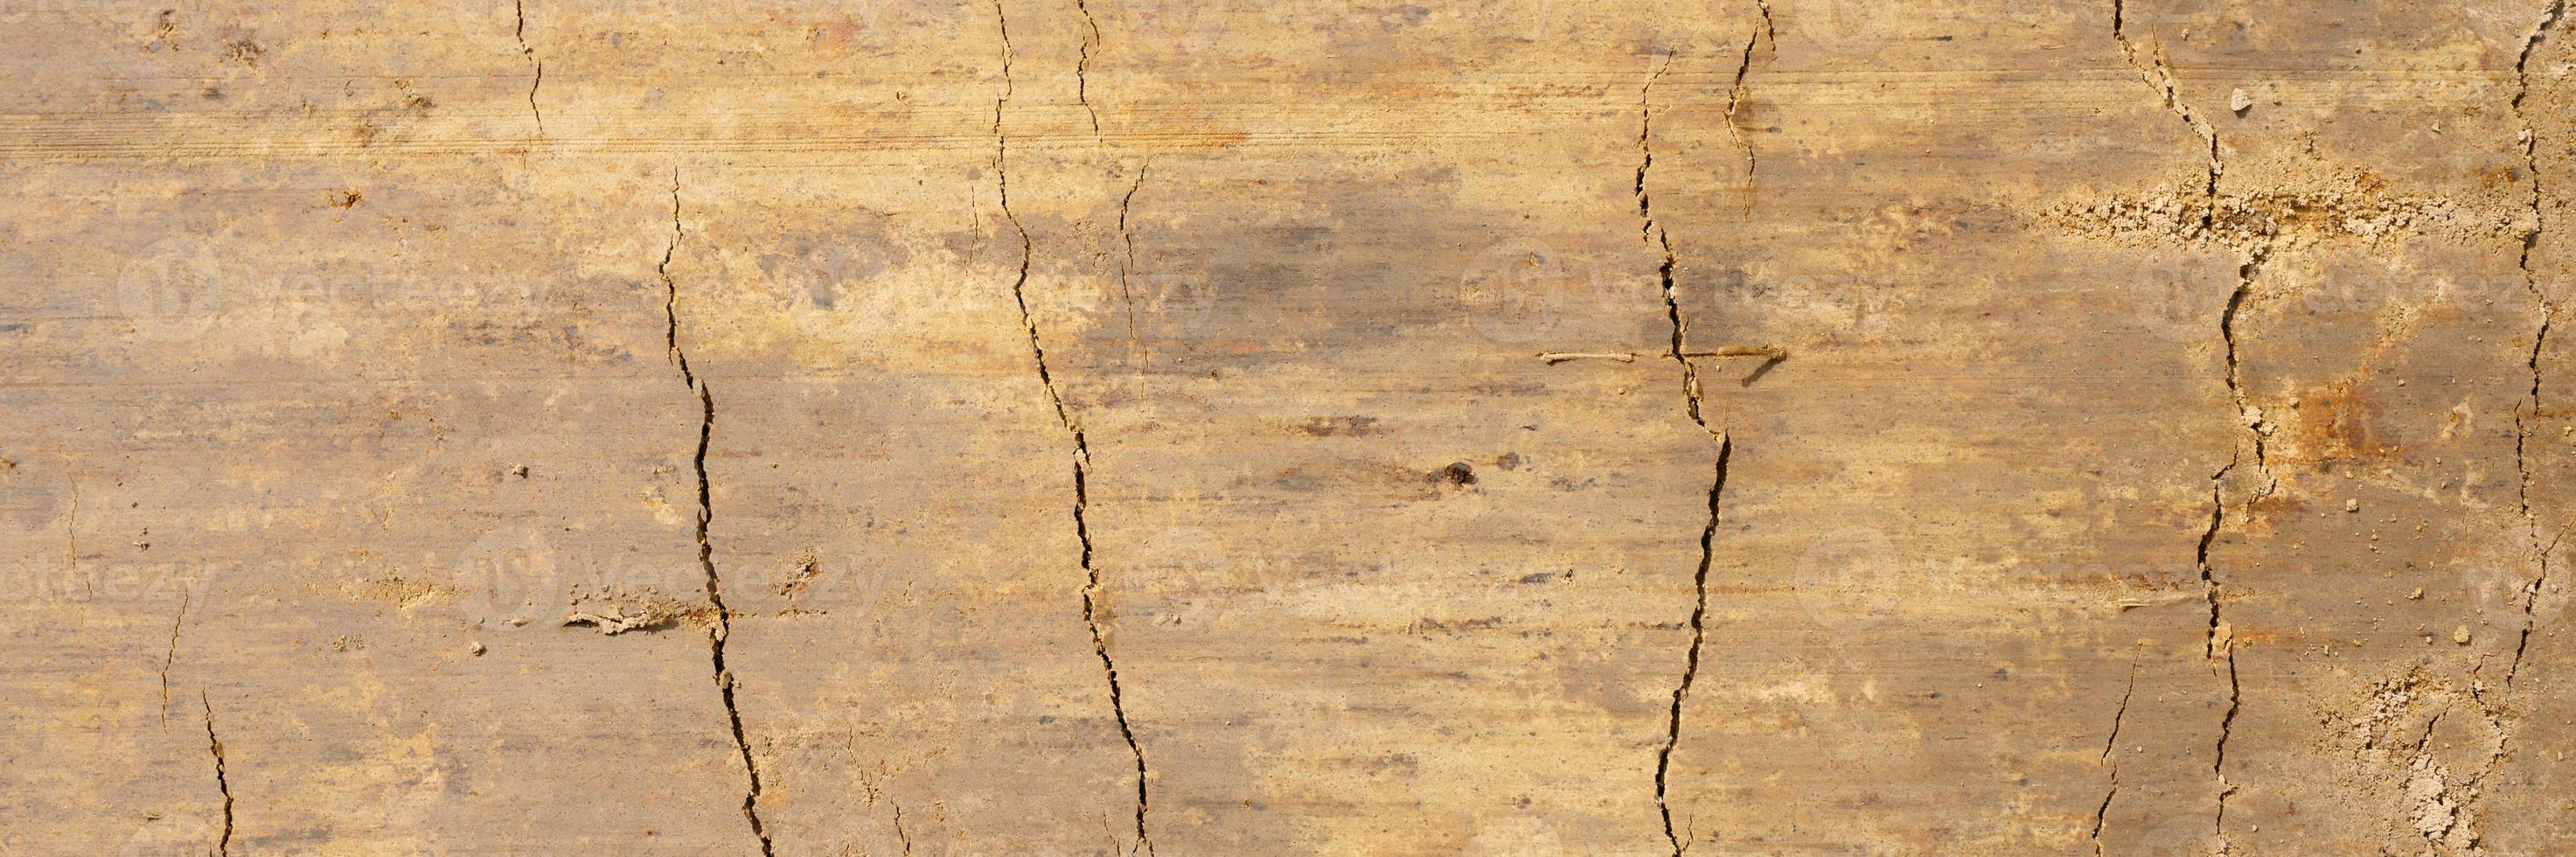 trama di sfondo dalla superficie liscia della sabbia di legno foto